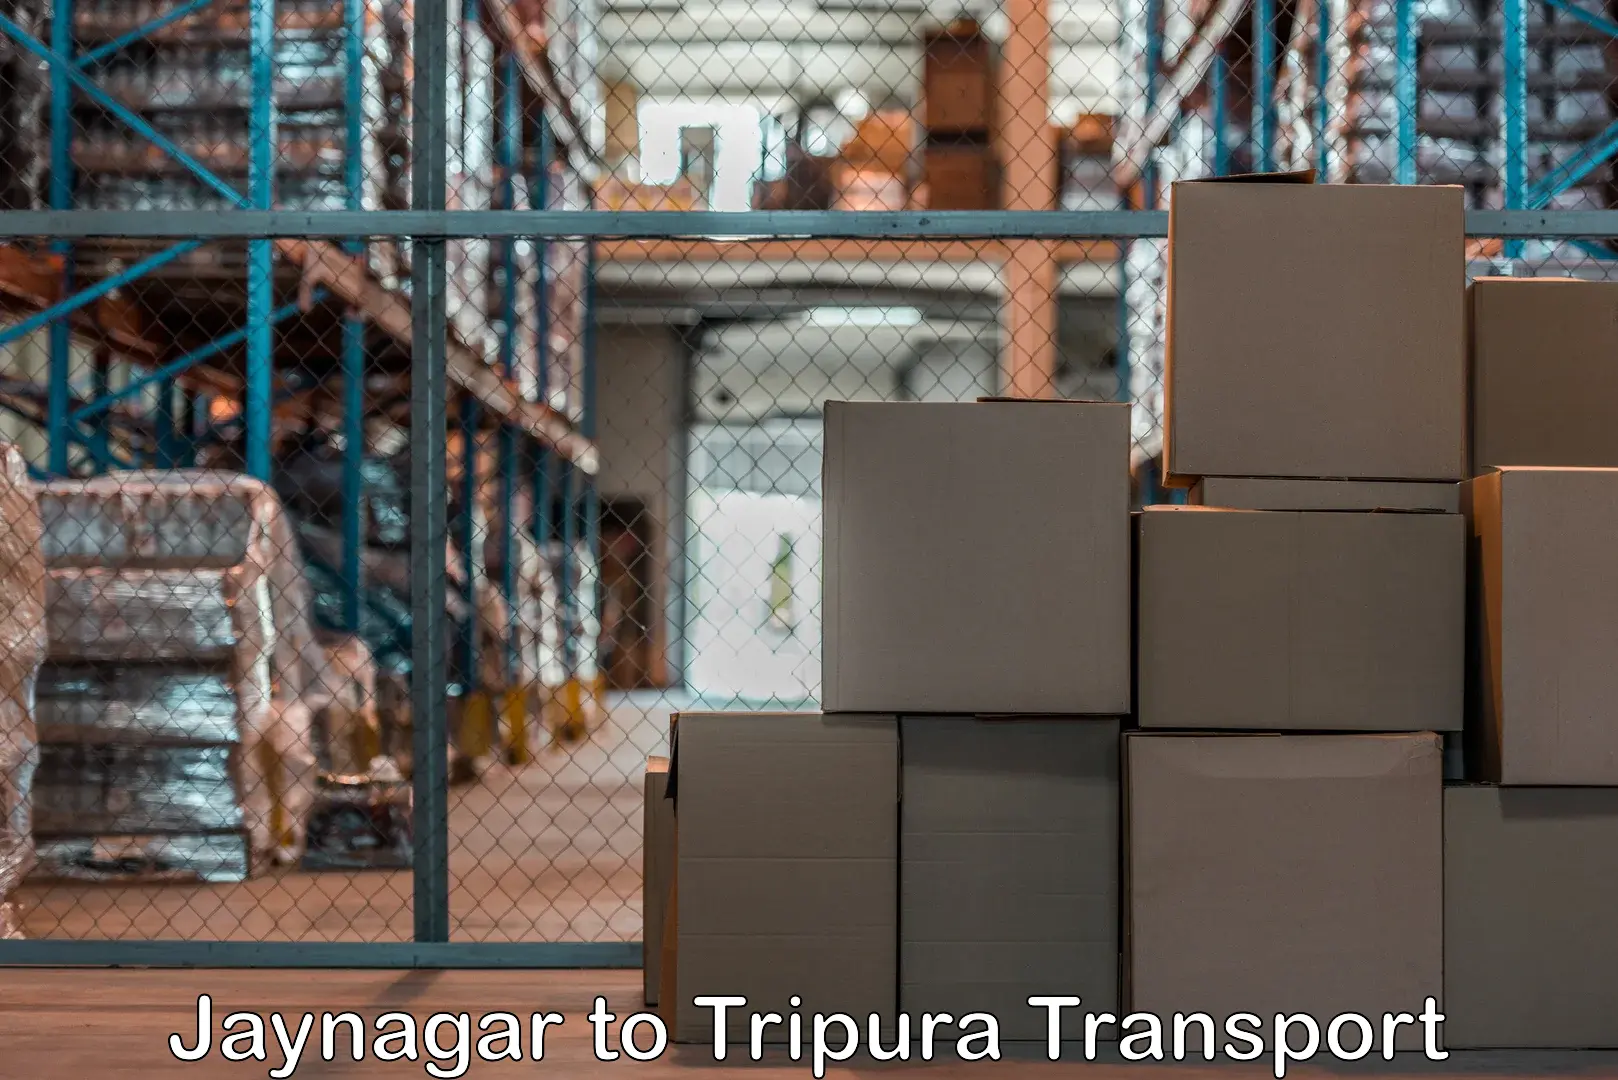 Nearest transport service Jaynagar to IIIT Agartala